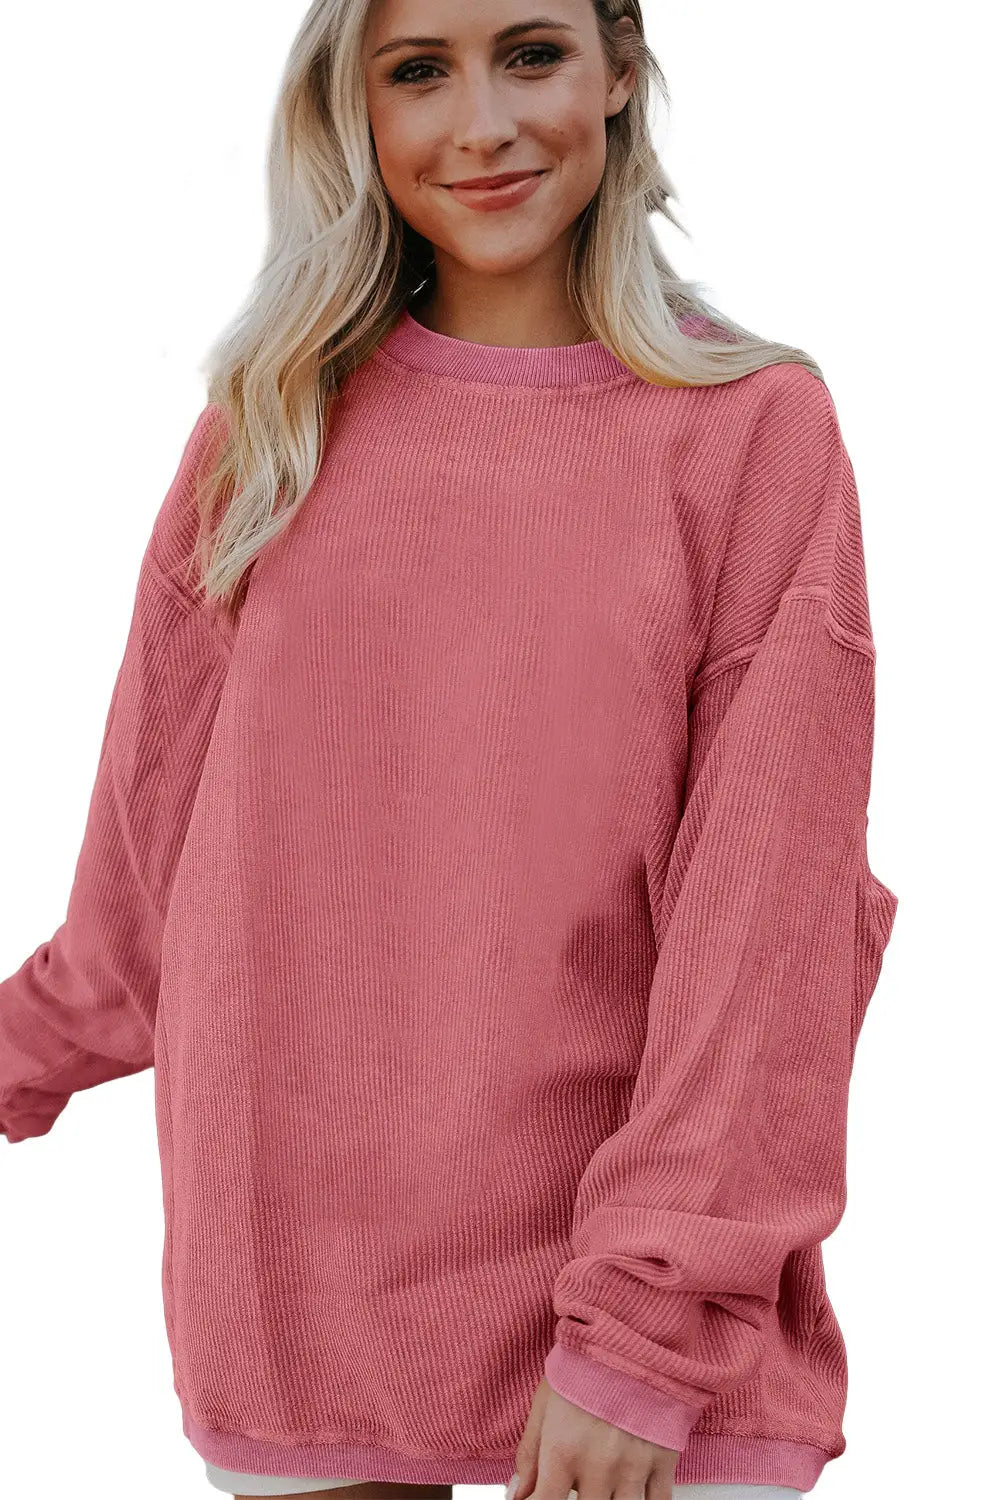 Strawberry pink ribbed corded oversized sweatshirt - sweatshirts & hoodies